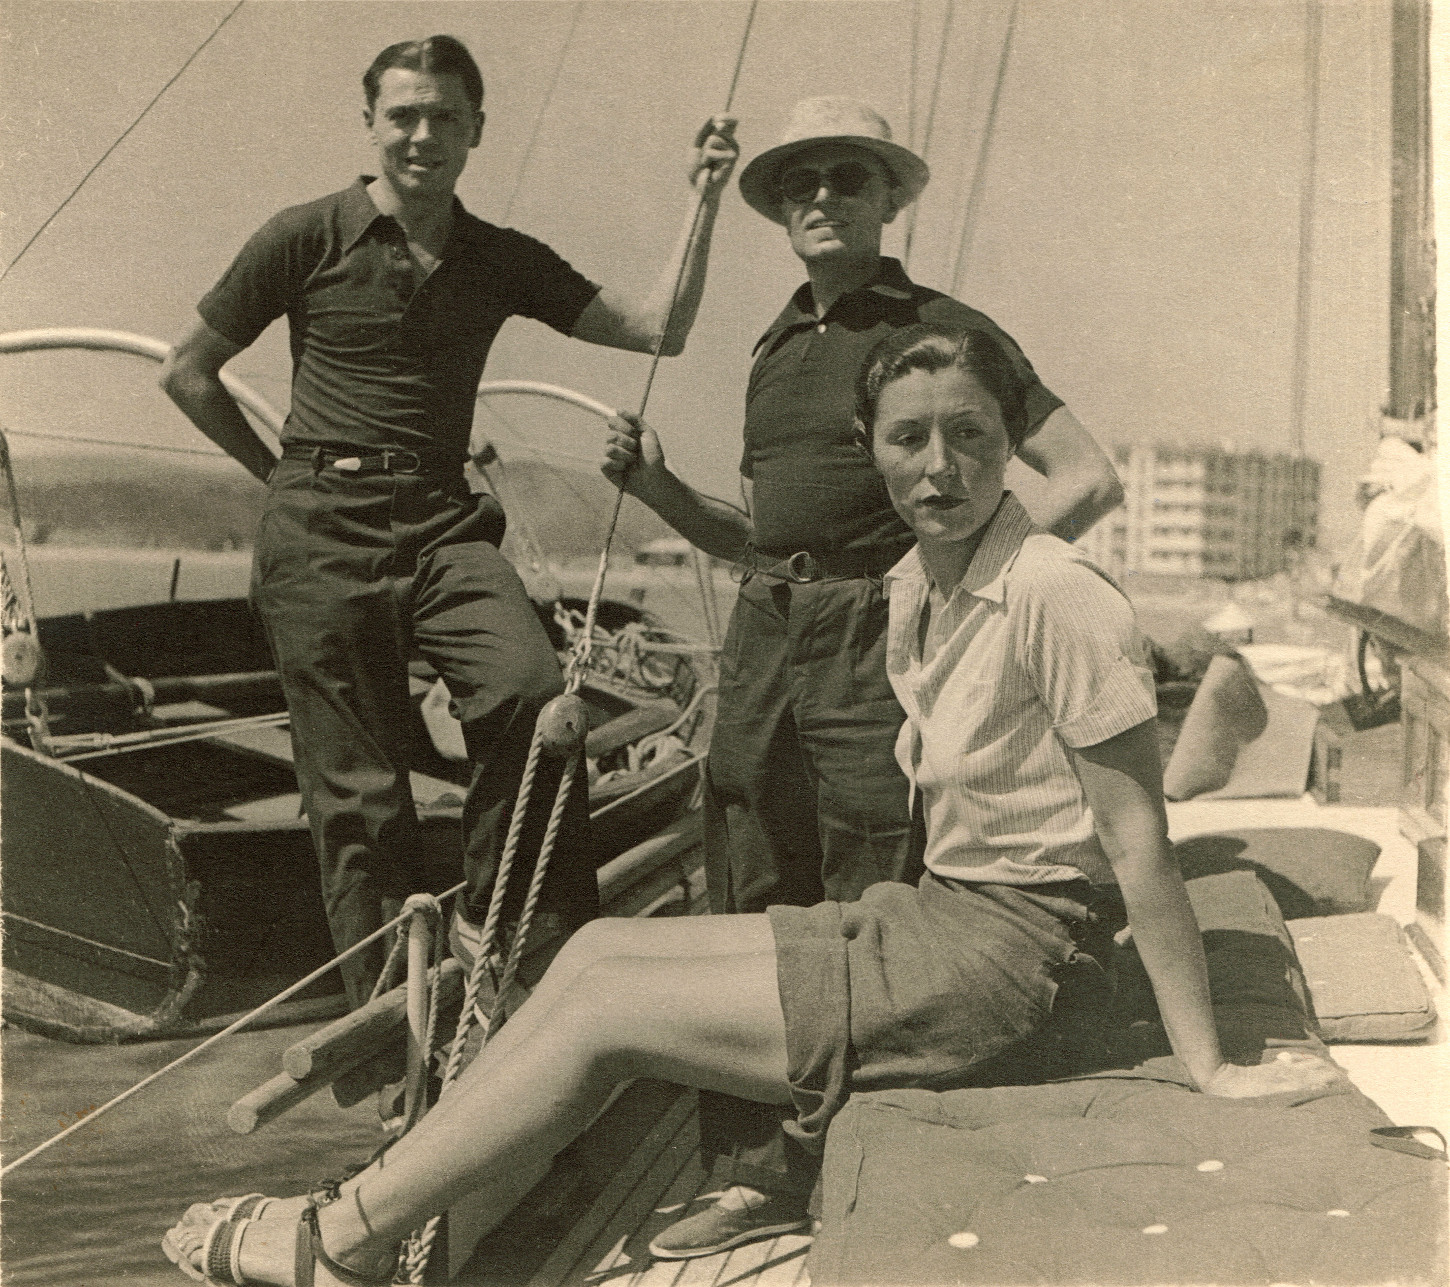 En vacances à Saint-Tropez dans les années 1930, sur La Gilda, le voilier d'un couple d'amis, le sous-préfet Jean Moulin, à gauche, avec Pierre Cot et une femme souvent identifiée comme étant Nena Cot mais qui pourrait être Andrée Chatin. Collection particulière famille Benoit.